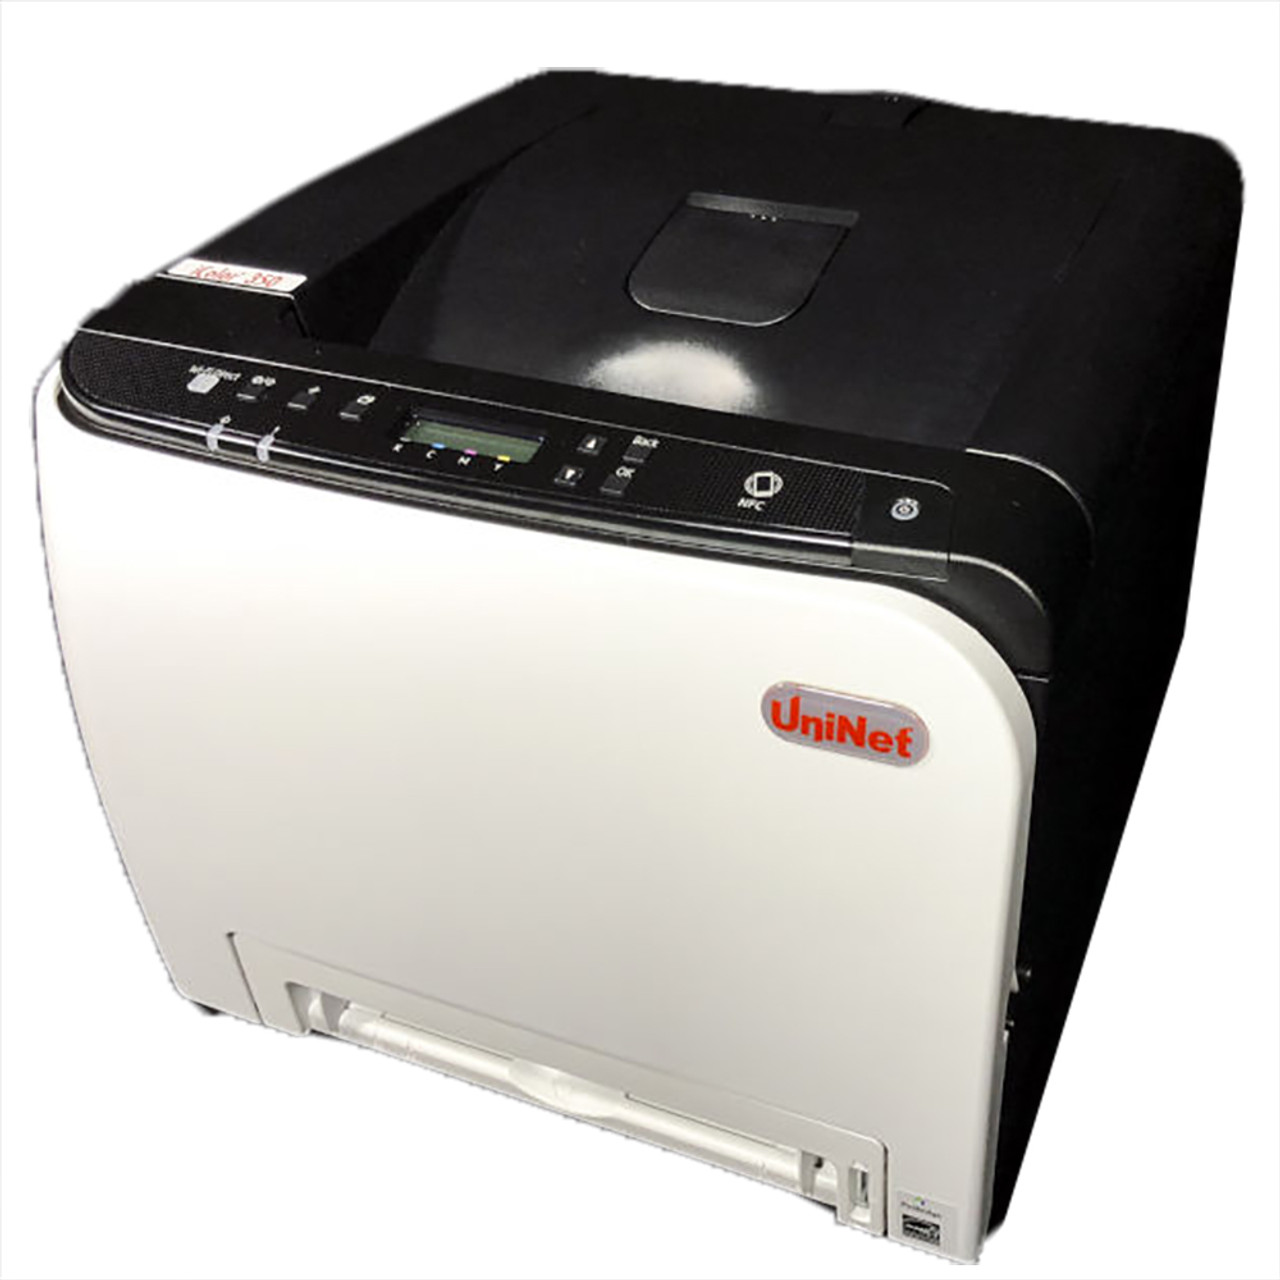 Uninet iColor 650 Printer With Heat Press Bundle, Includes iColor ProRIP,  SmartCUT and 2 Year Warranty